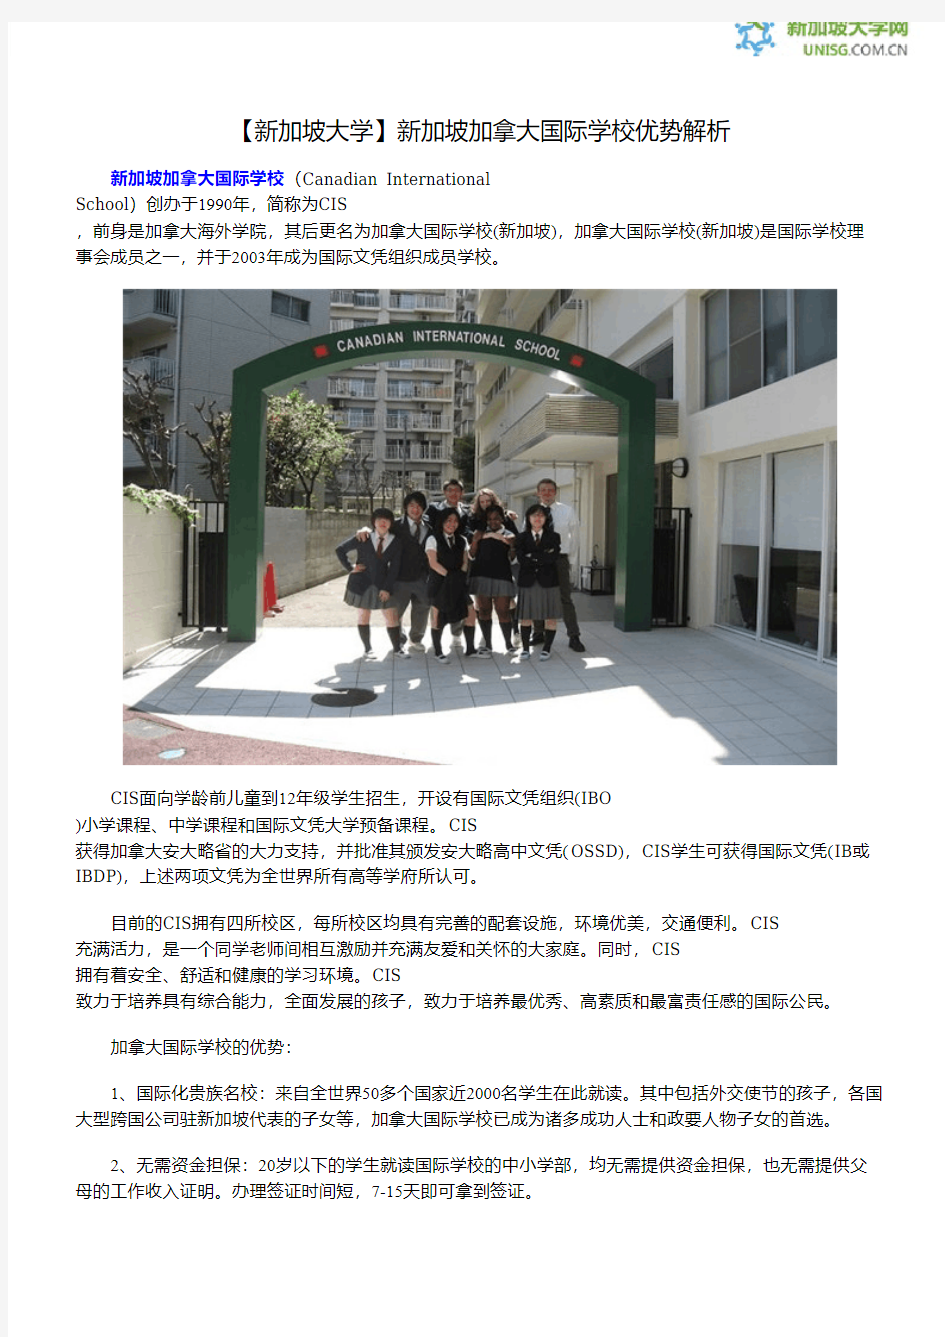 【新加坡大学】新加坡加拿大国际学校优势解析